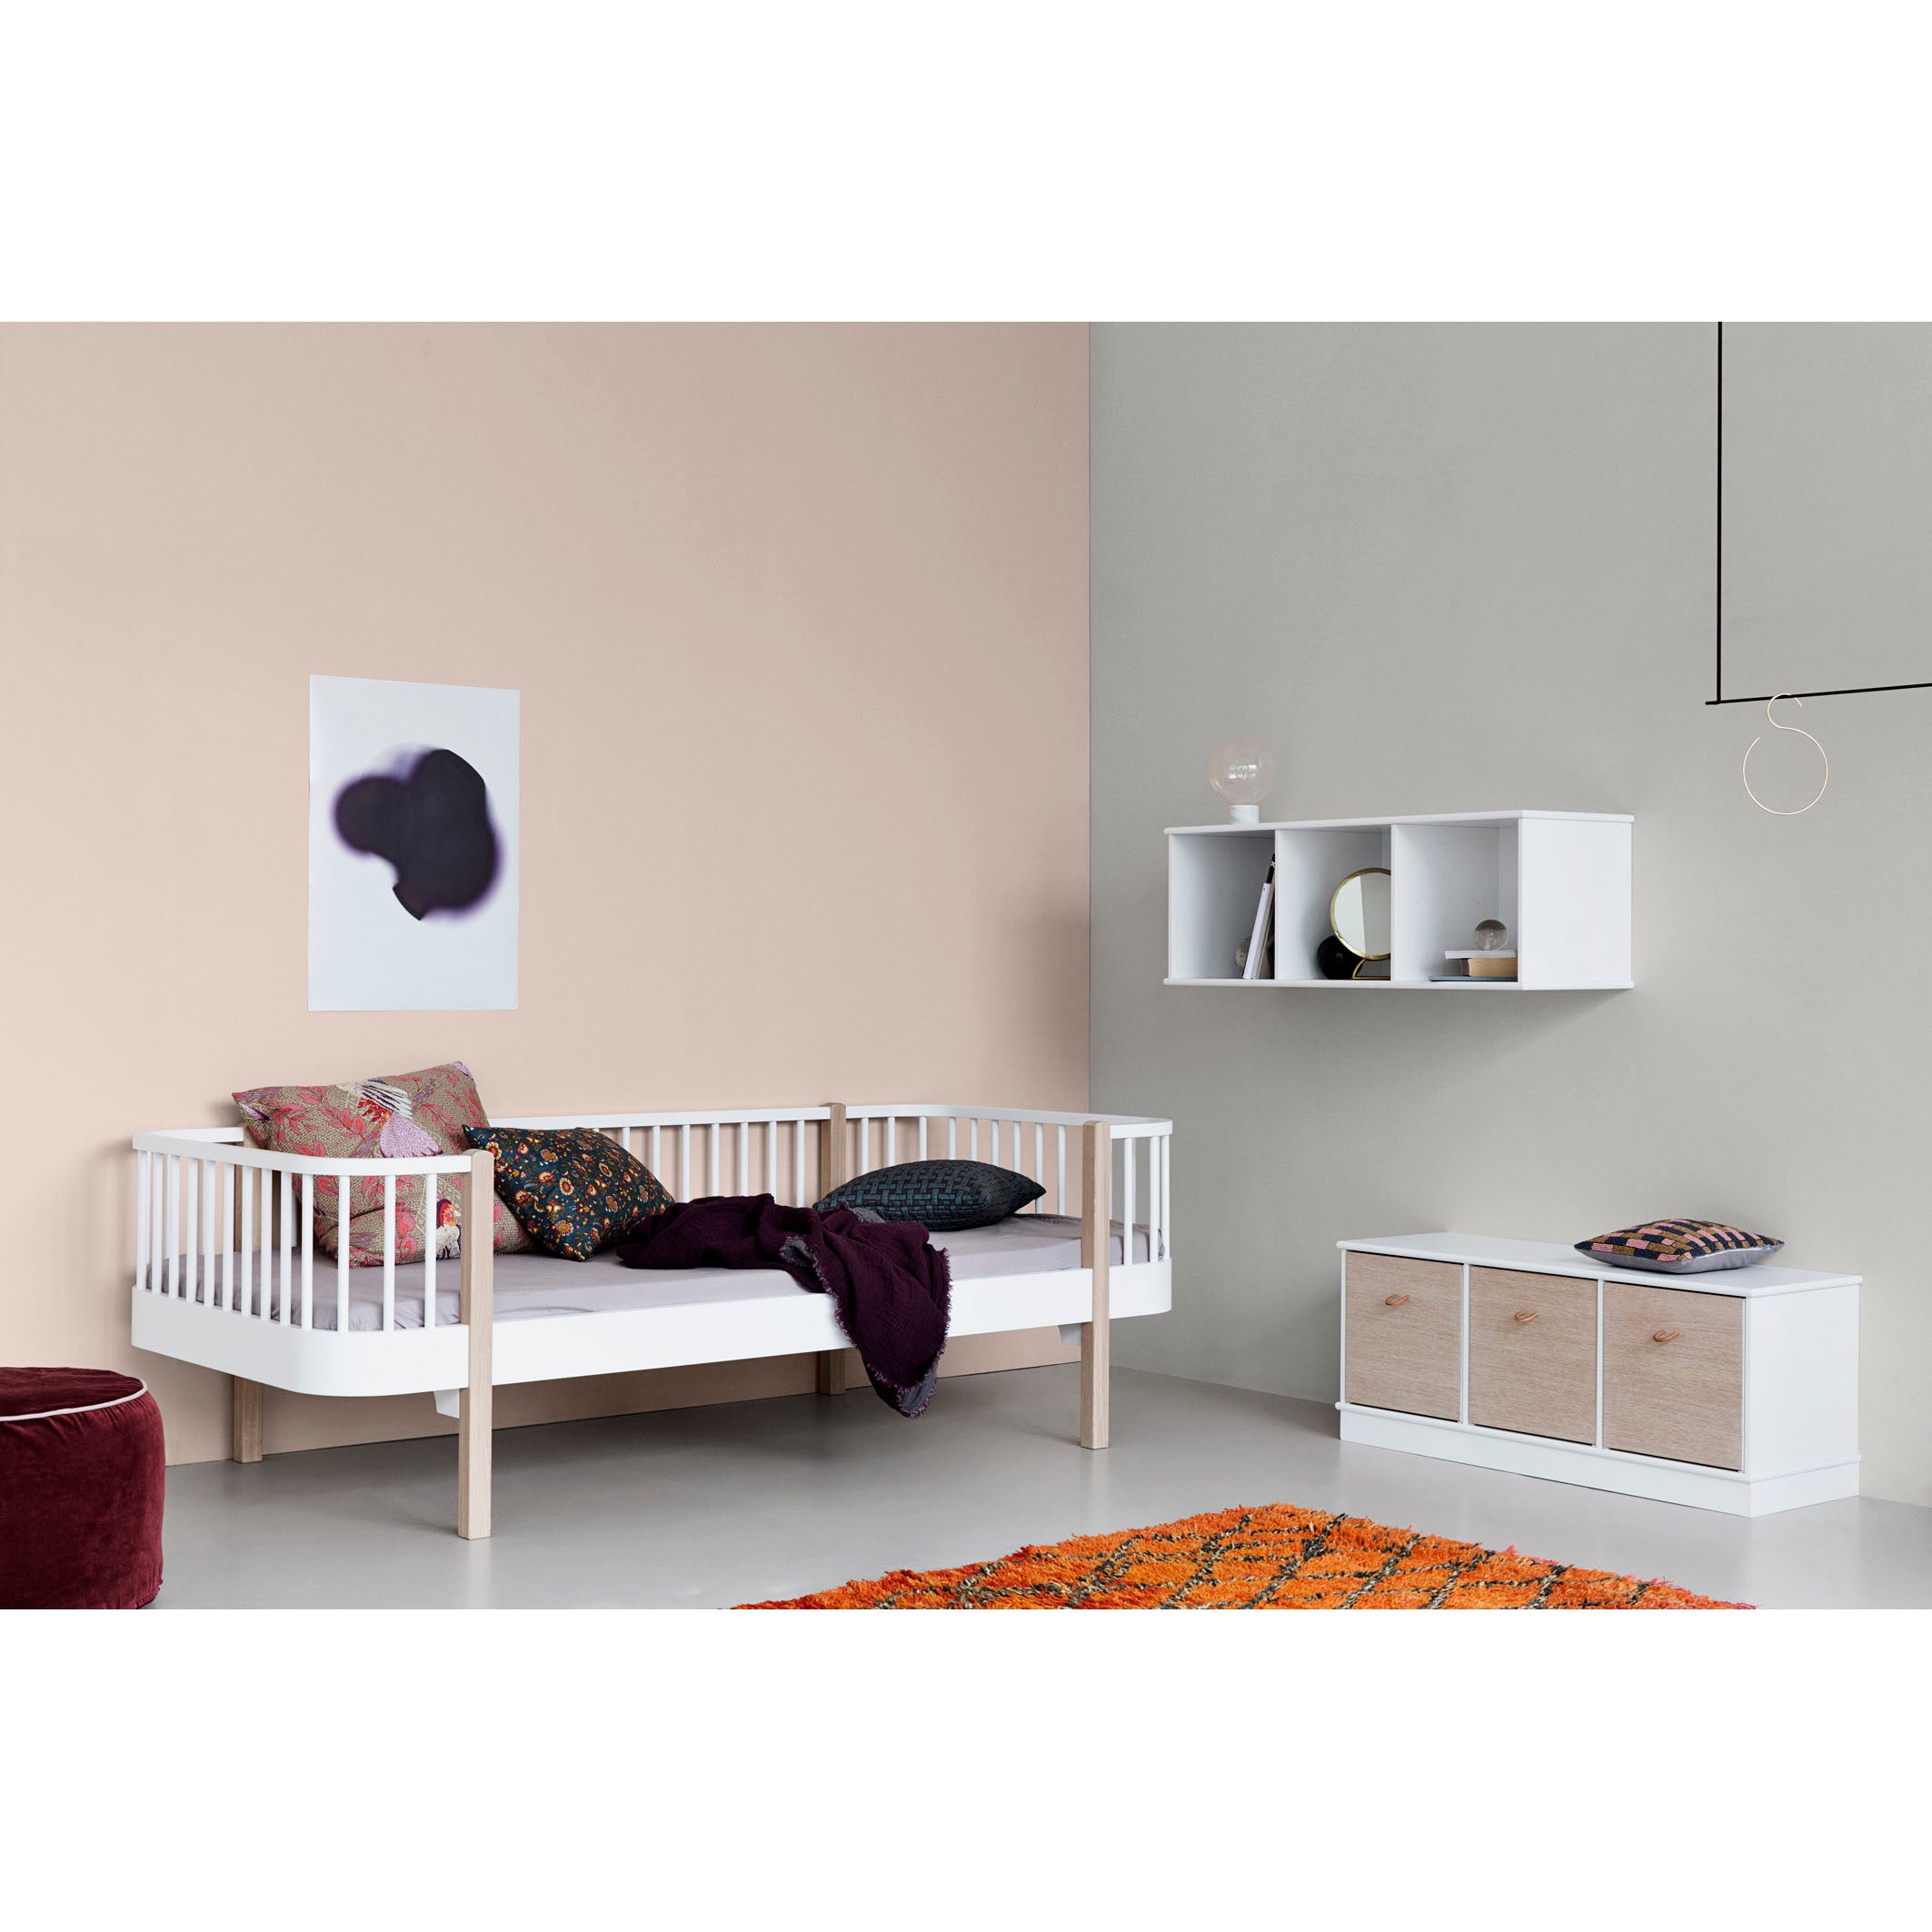 oliver-furniture-wood-shelving-unit-3x1-horizontal-shelf-with-base- (4)